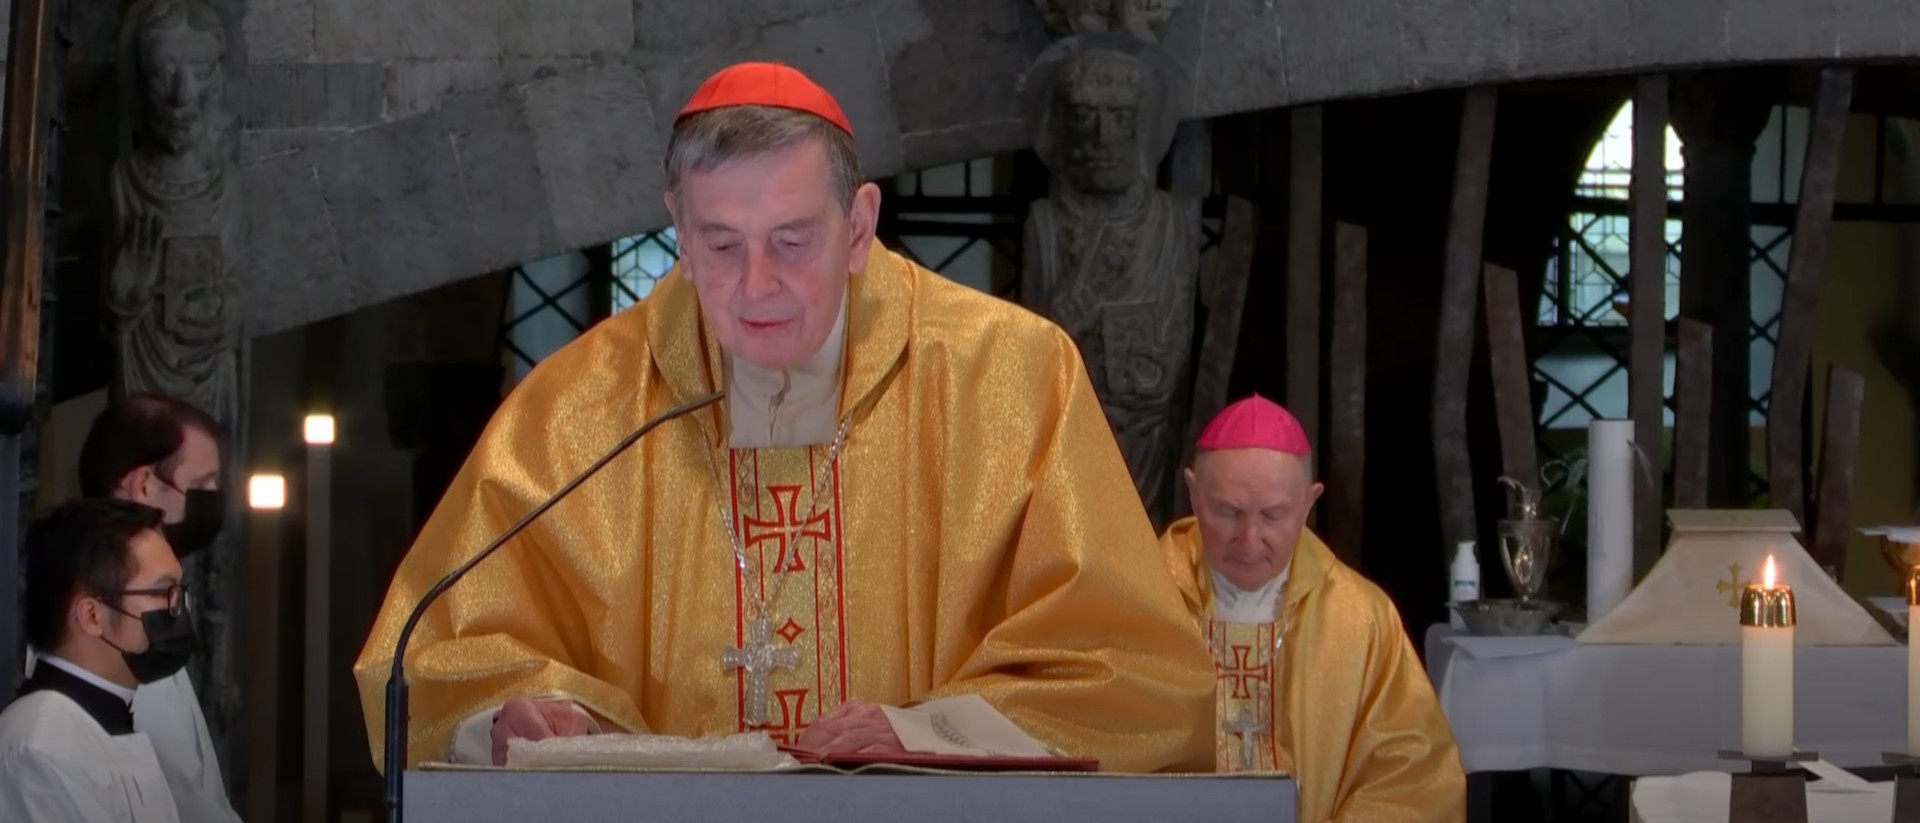 Kurienkardinal Kurt Koch predigt an der Bischofsweihe in Chur, 19. März